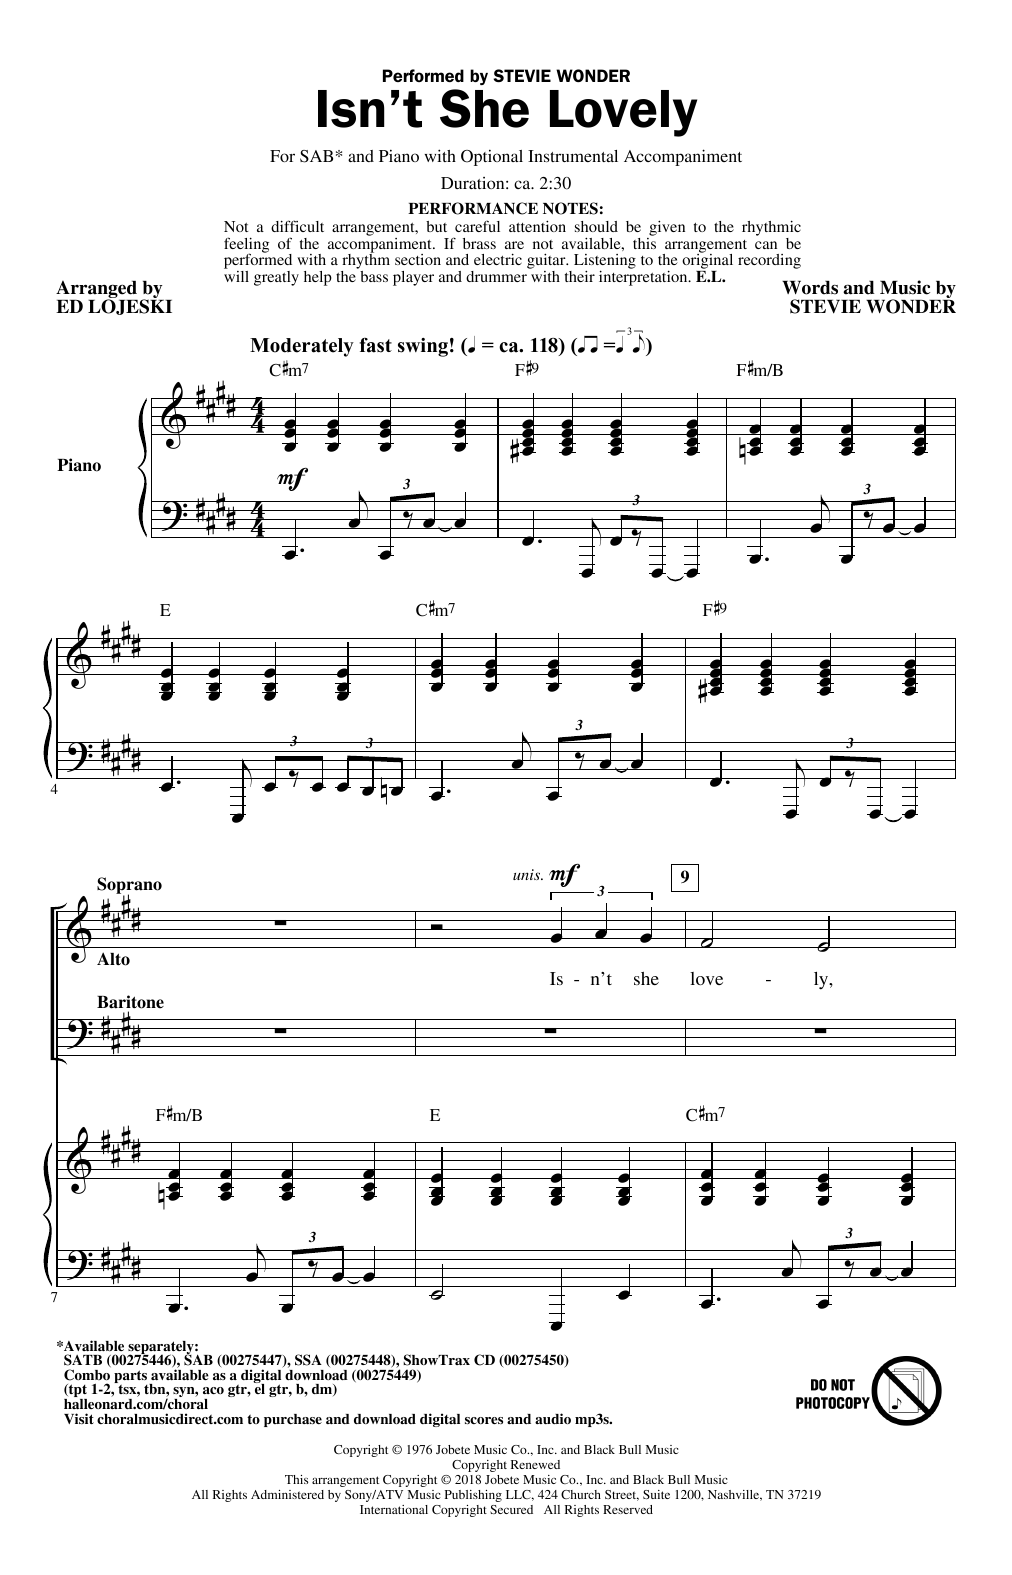 Stevie Wonder Isn't She Lovely (arr. Ed Lojeski) sheet music notes and chords arranged for 2-Part Choir